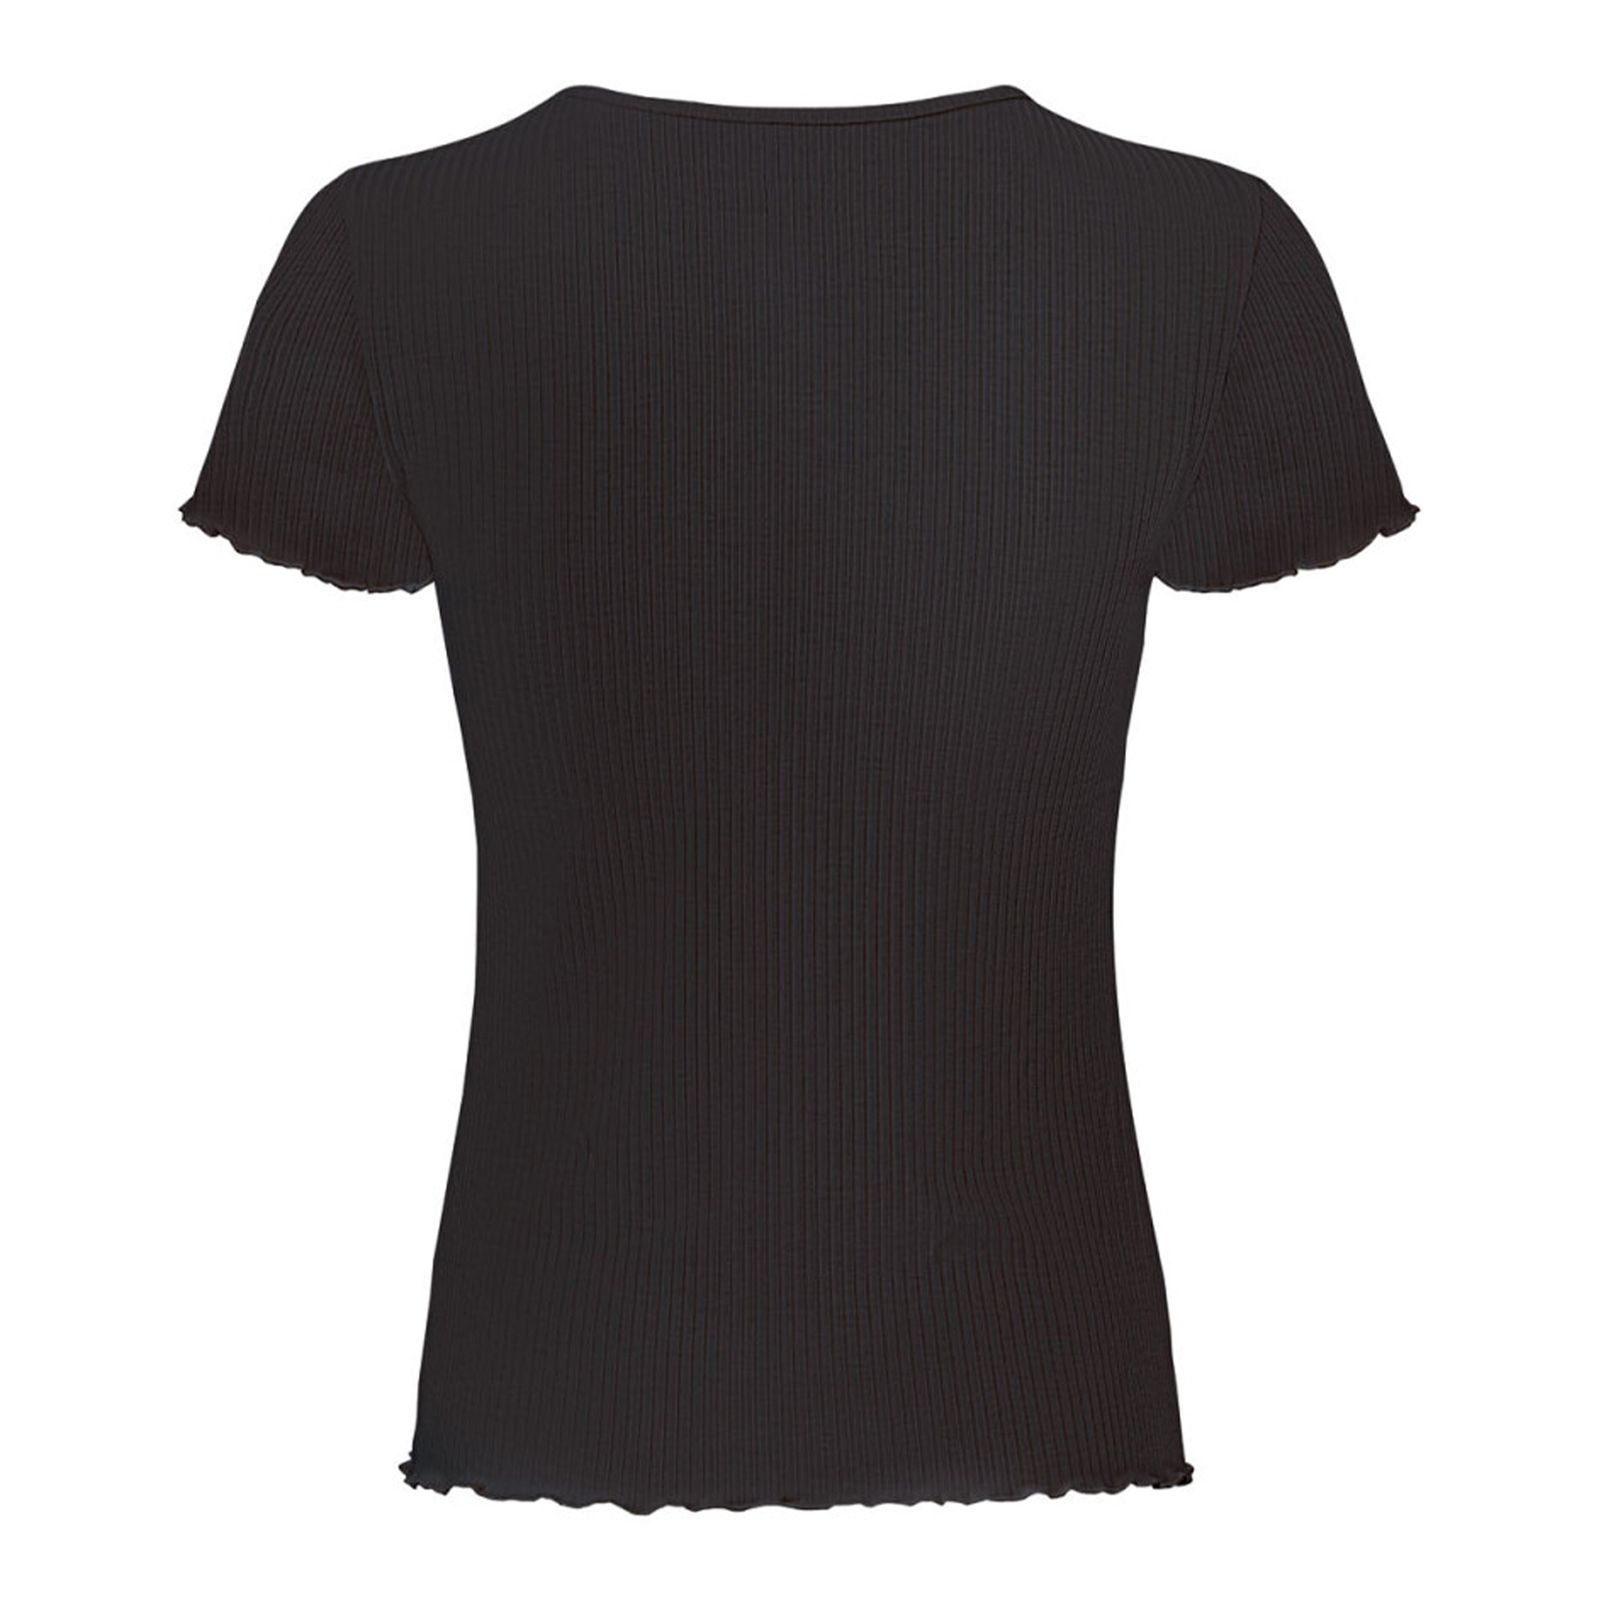 تی شرت آستین کوتاه زنانه اسمارا مدل کبریتی رنگ مشکی -  - 2